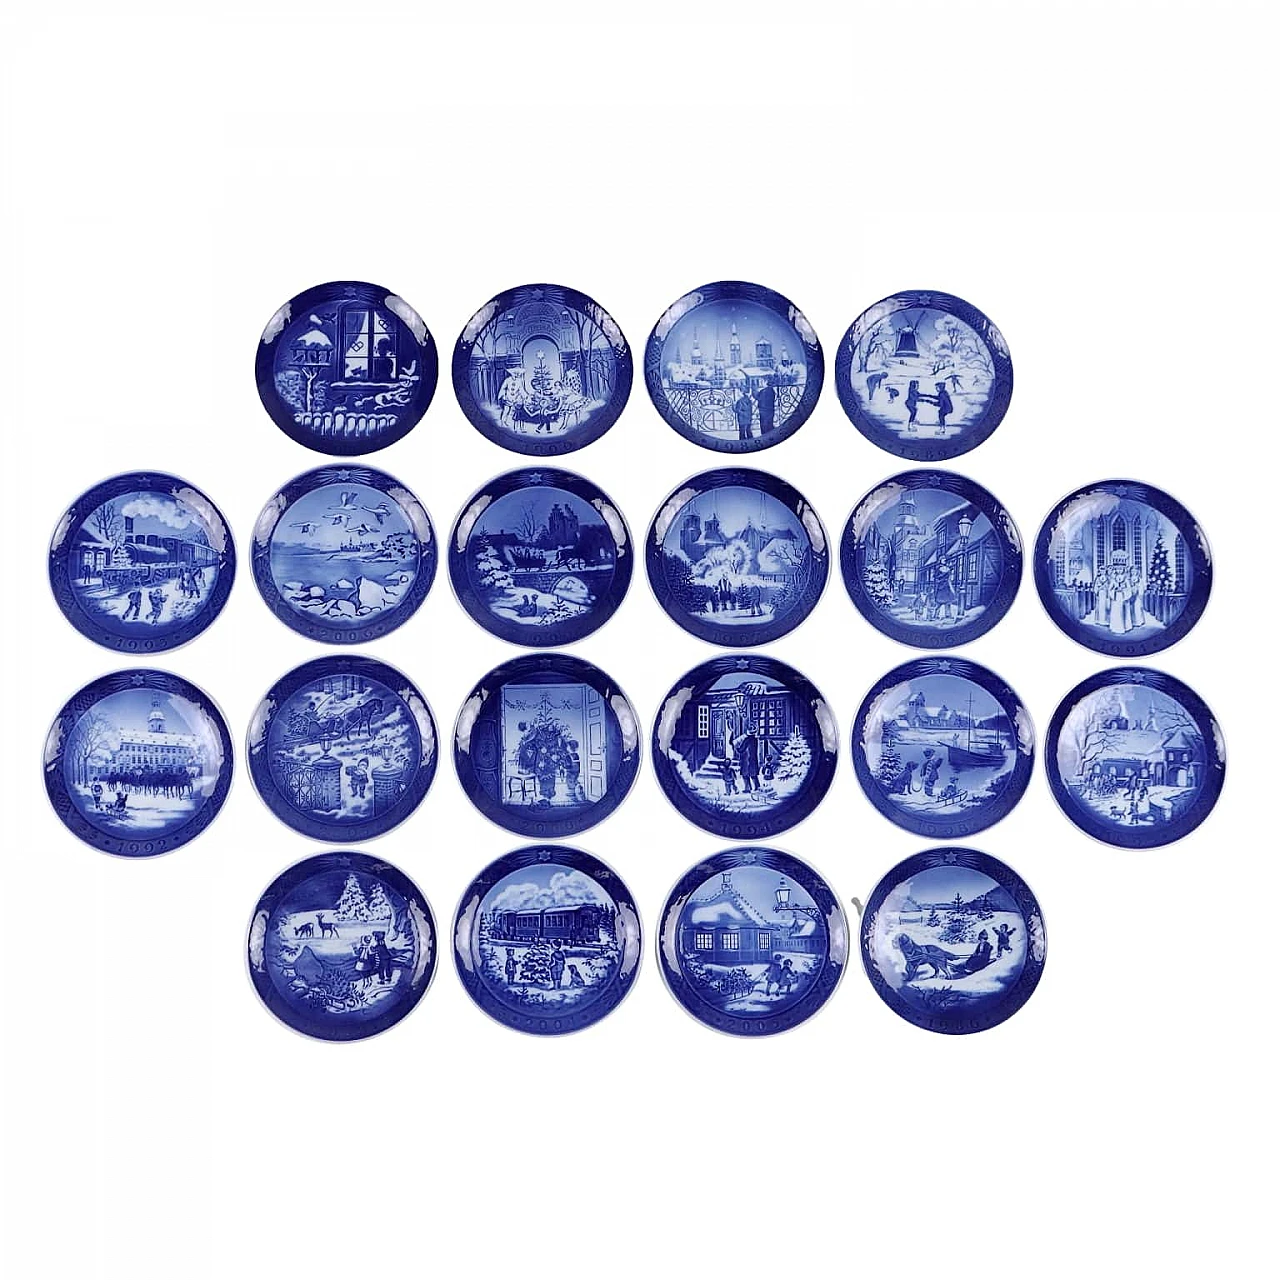 20 Blue porcelain plates by Royal Copenhagen 1